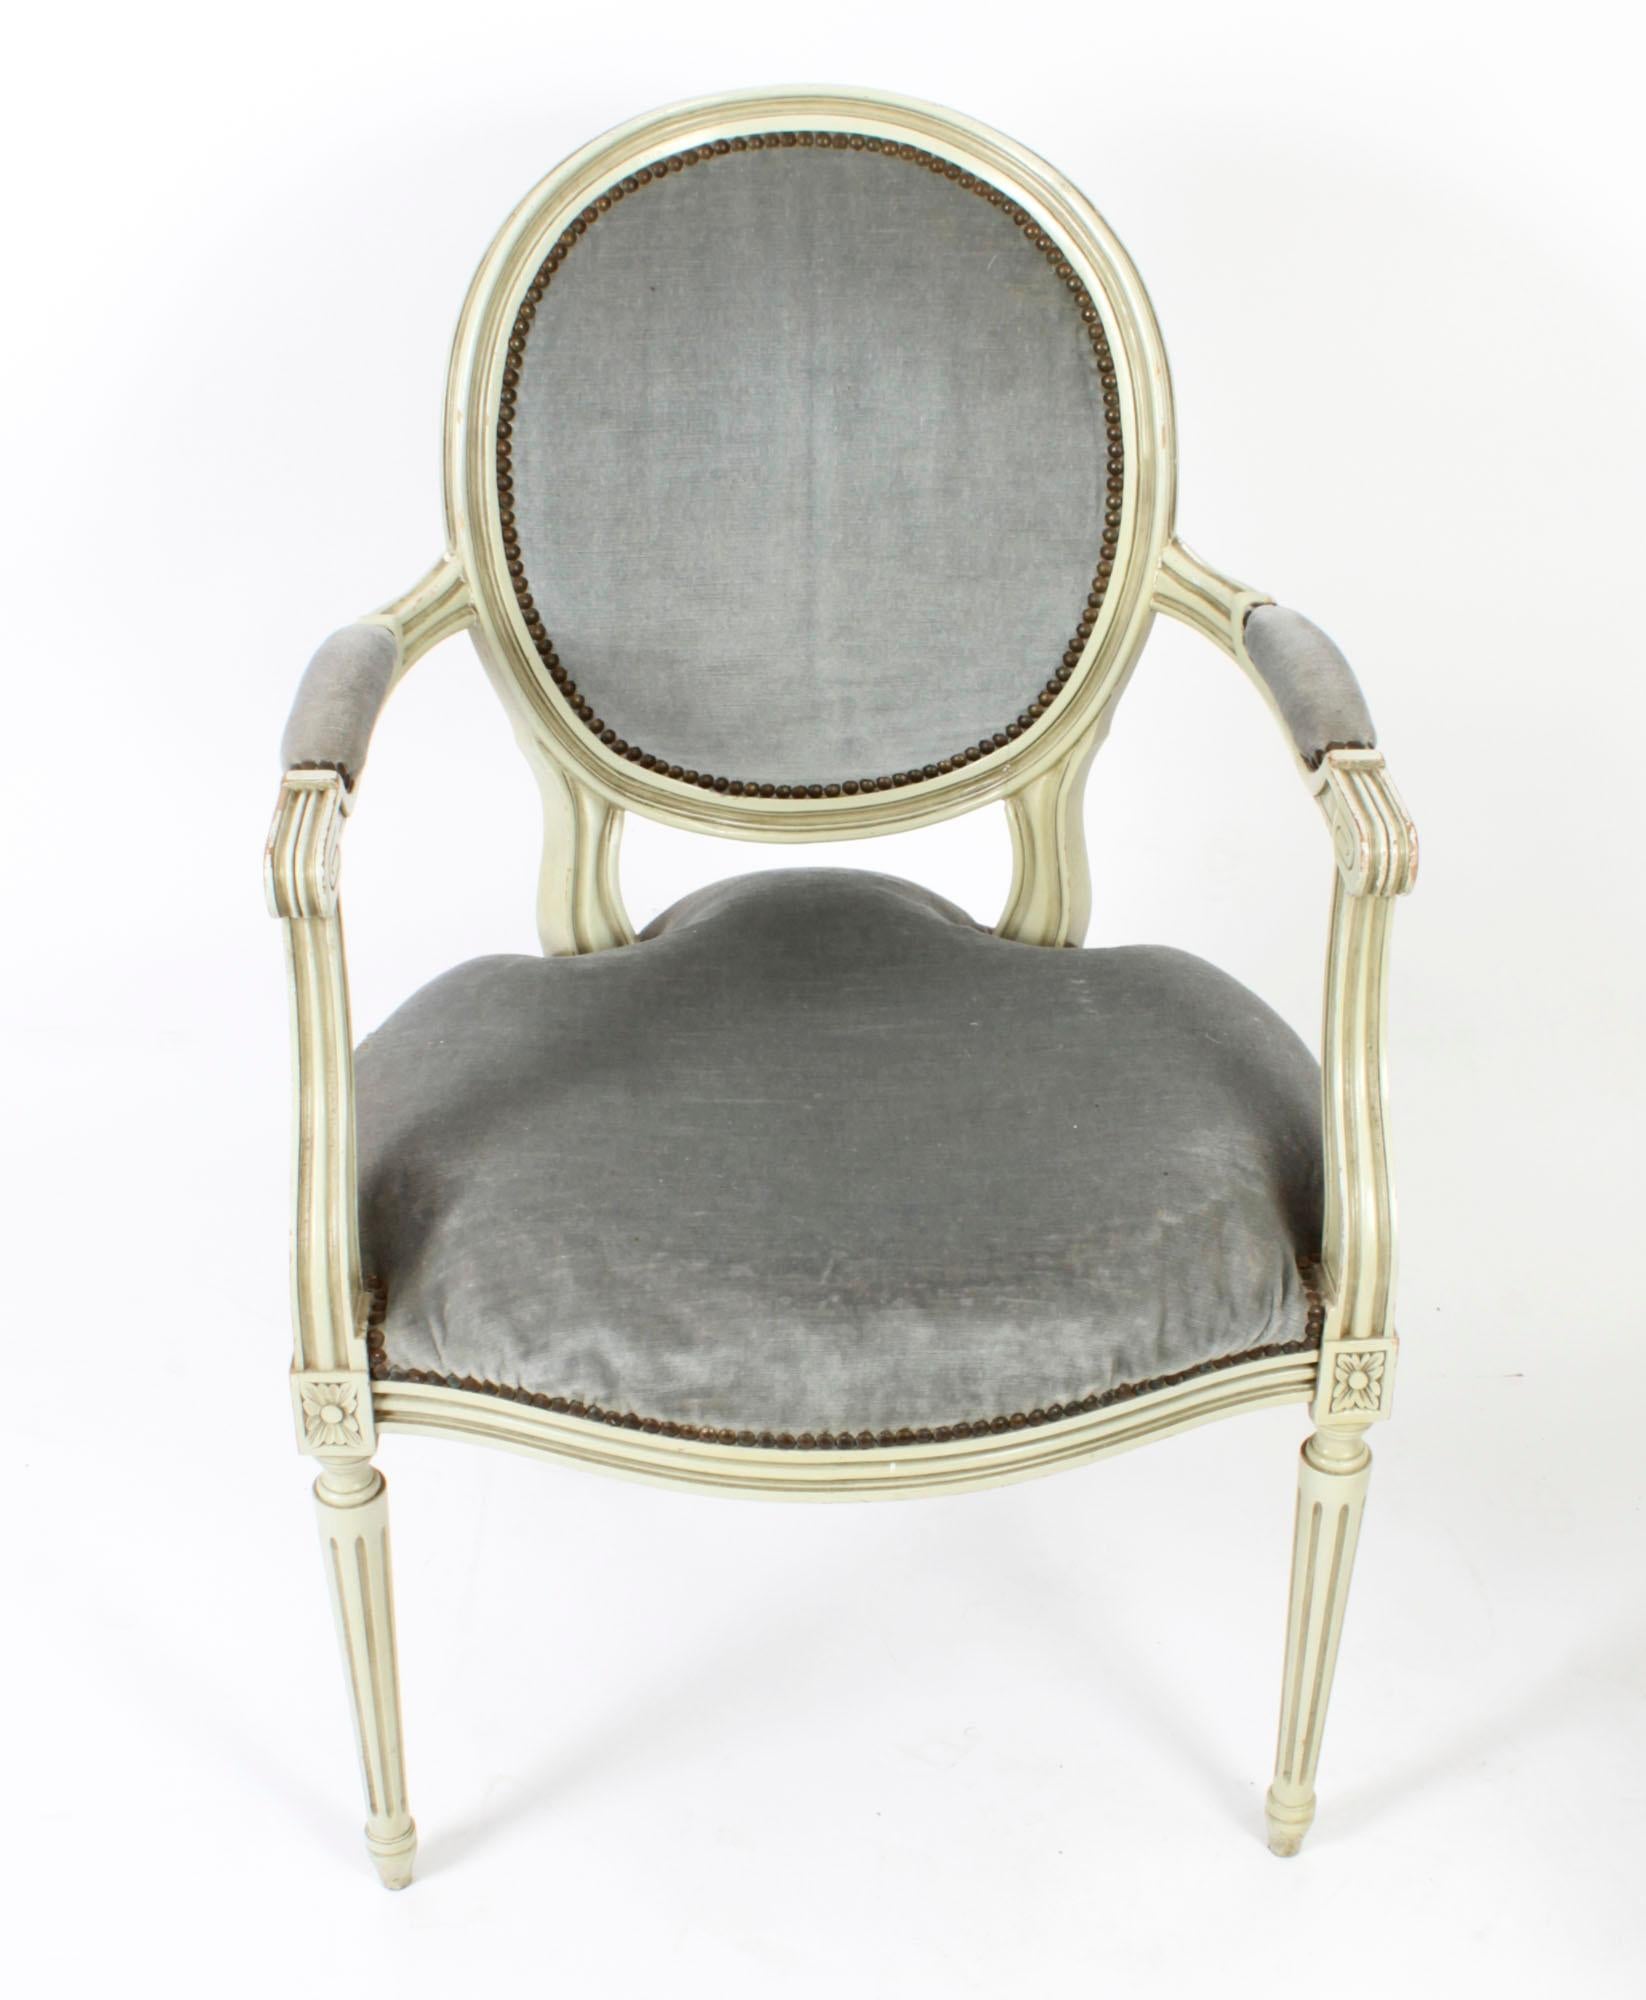 Dies ist ein fantastisches antikes Paar englischer Sheraton-Revival-Sessel in grau/grüner Farbe,  um 1920 datiert.
  
Jeder Stuhl hat eine ovale, gepolsterte Rückenlehne, einen gepolsterten Sitz und gepolsterte Armlehnen, die auf rund gedrechselten